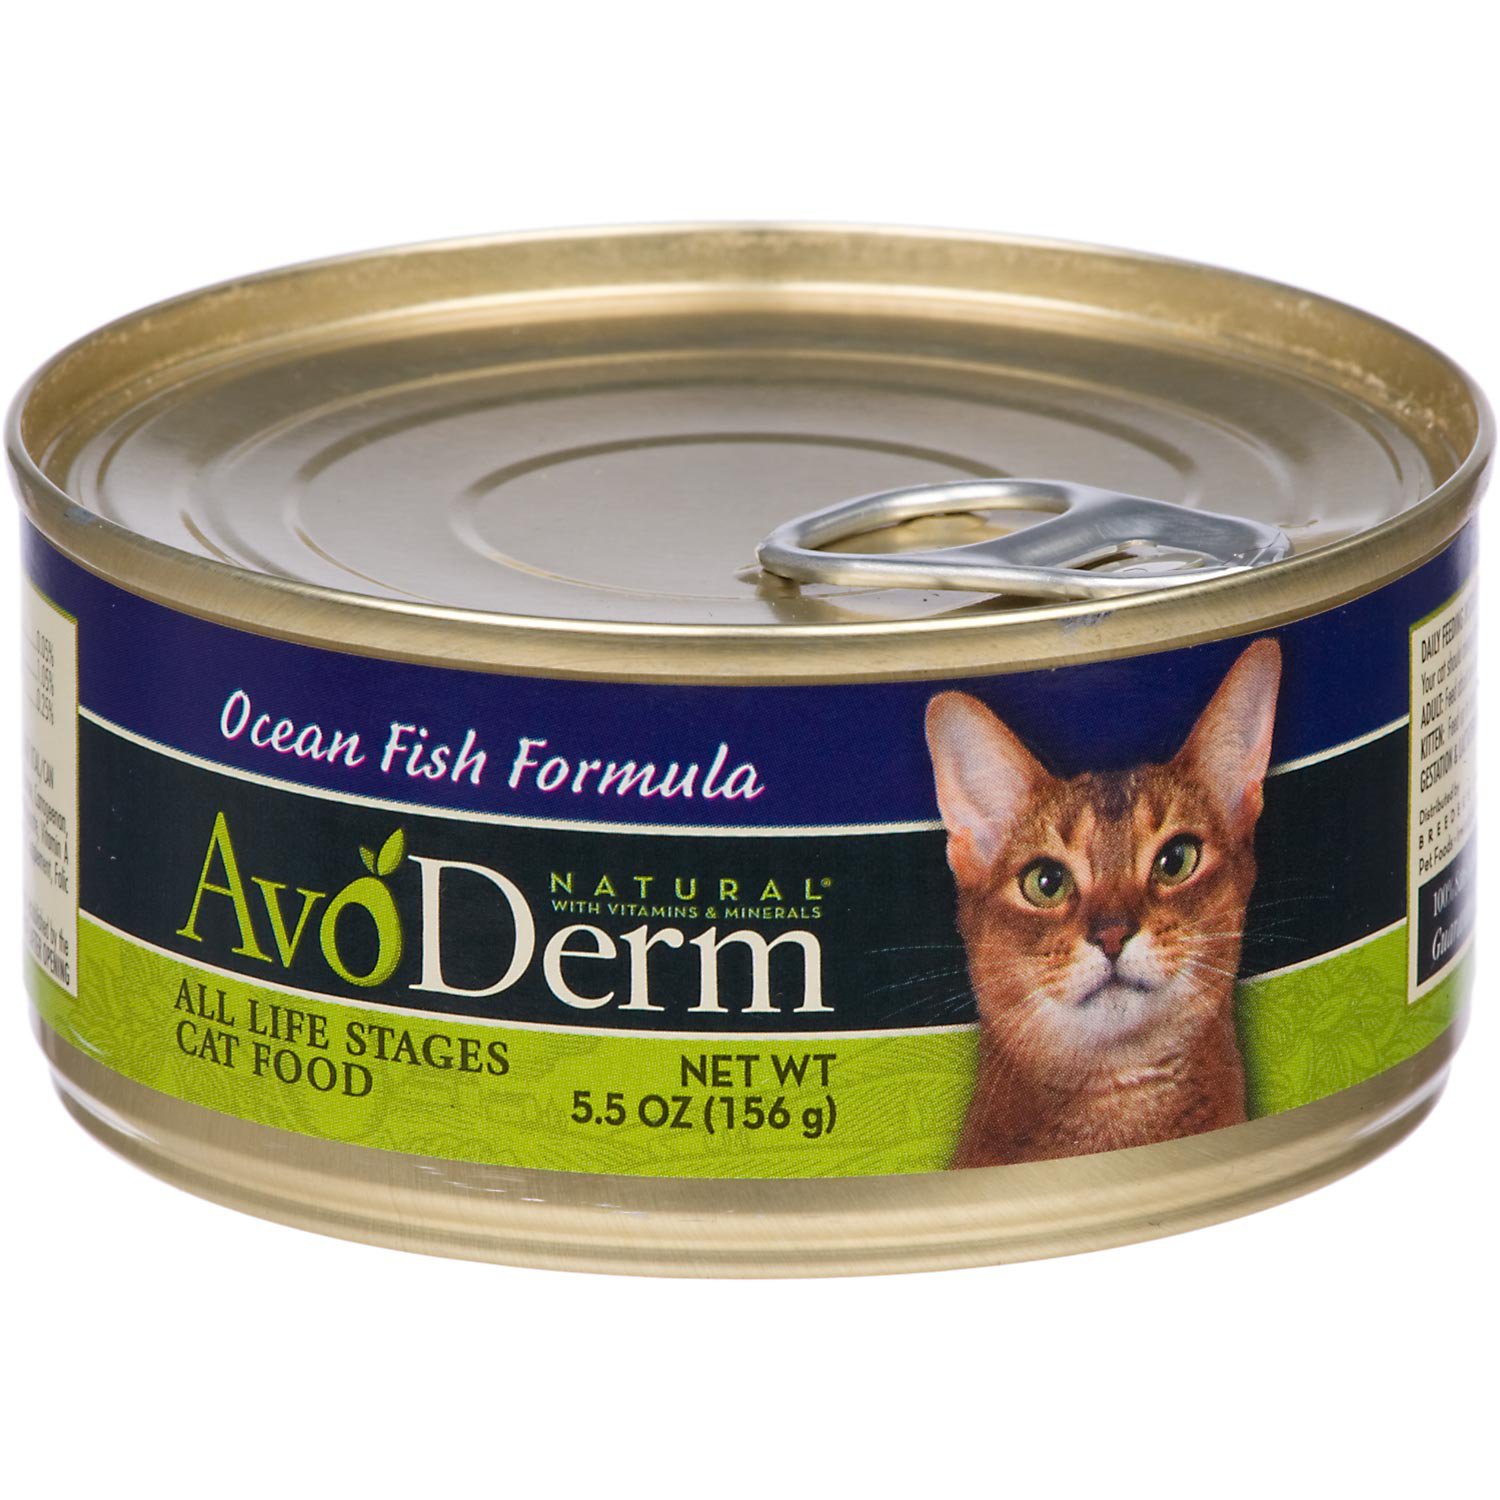 AvoDerm Natural Ocean Fish Formula Canned Cat Food Petco